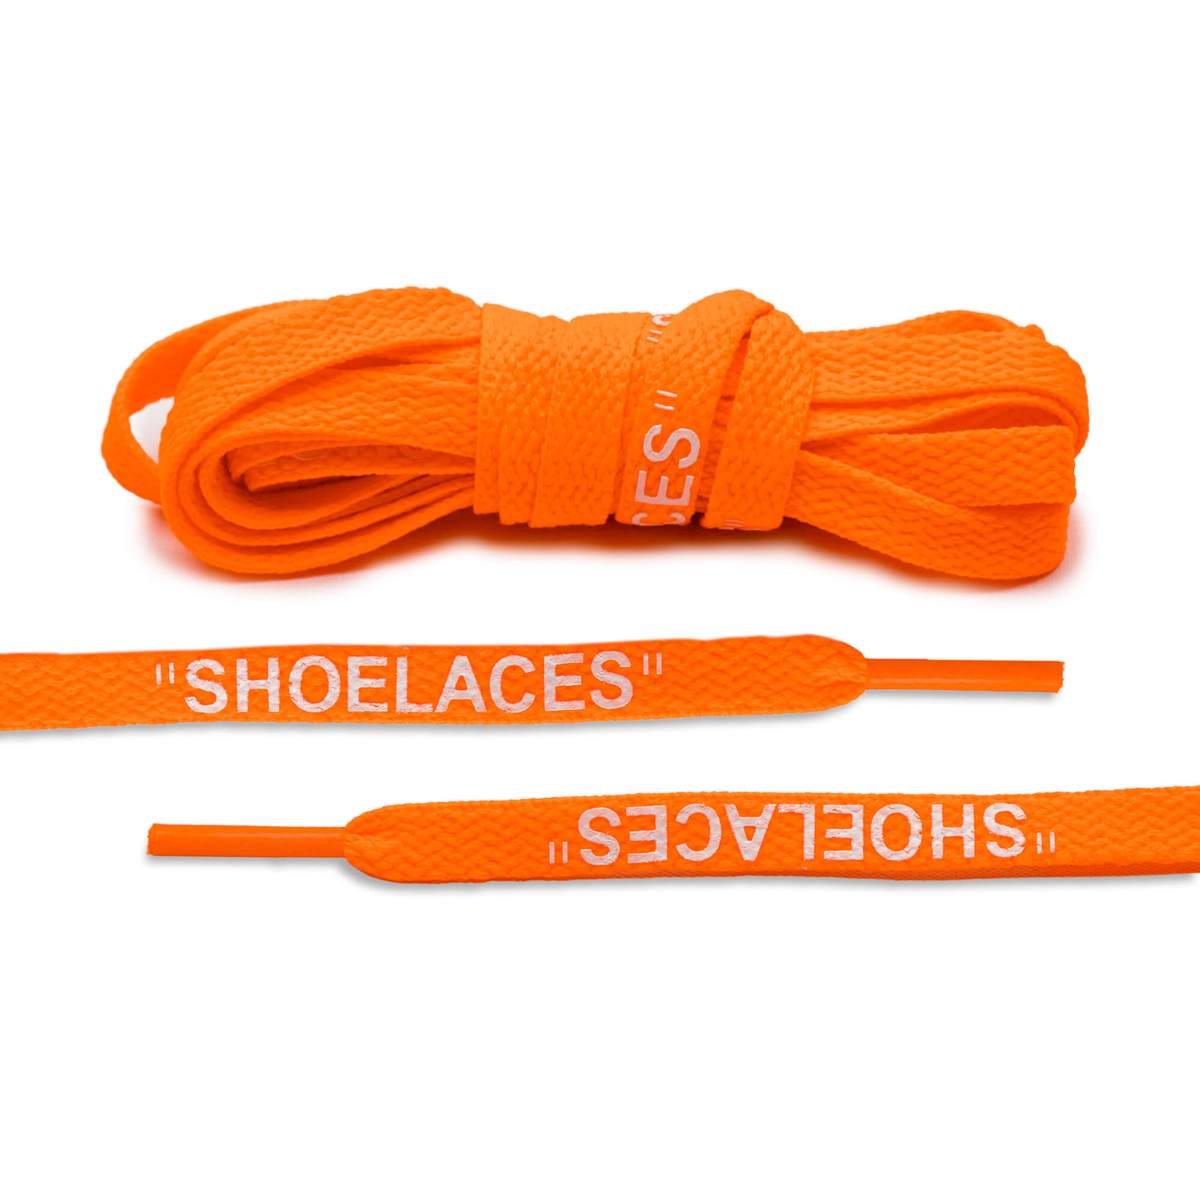 OFF WHITE "shoelaces" orange